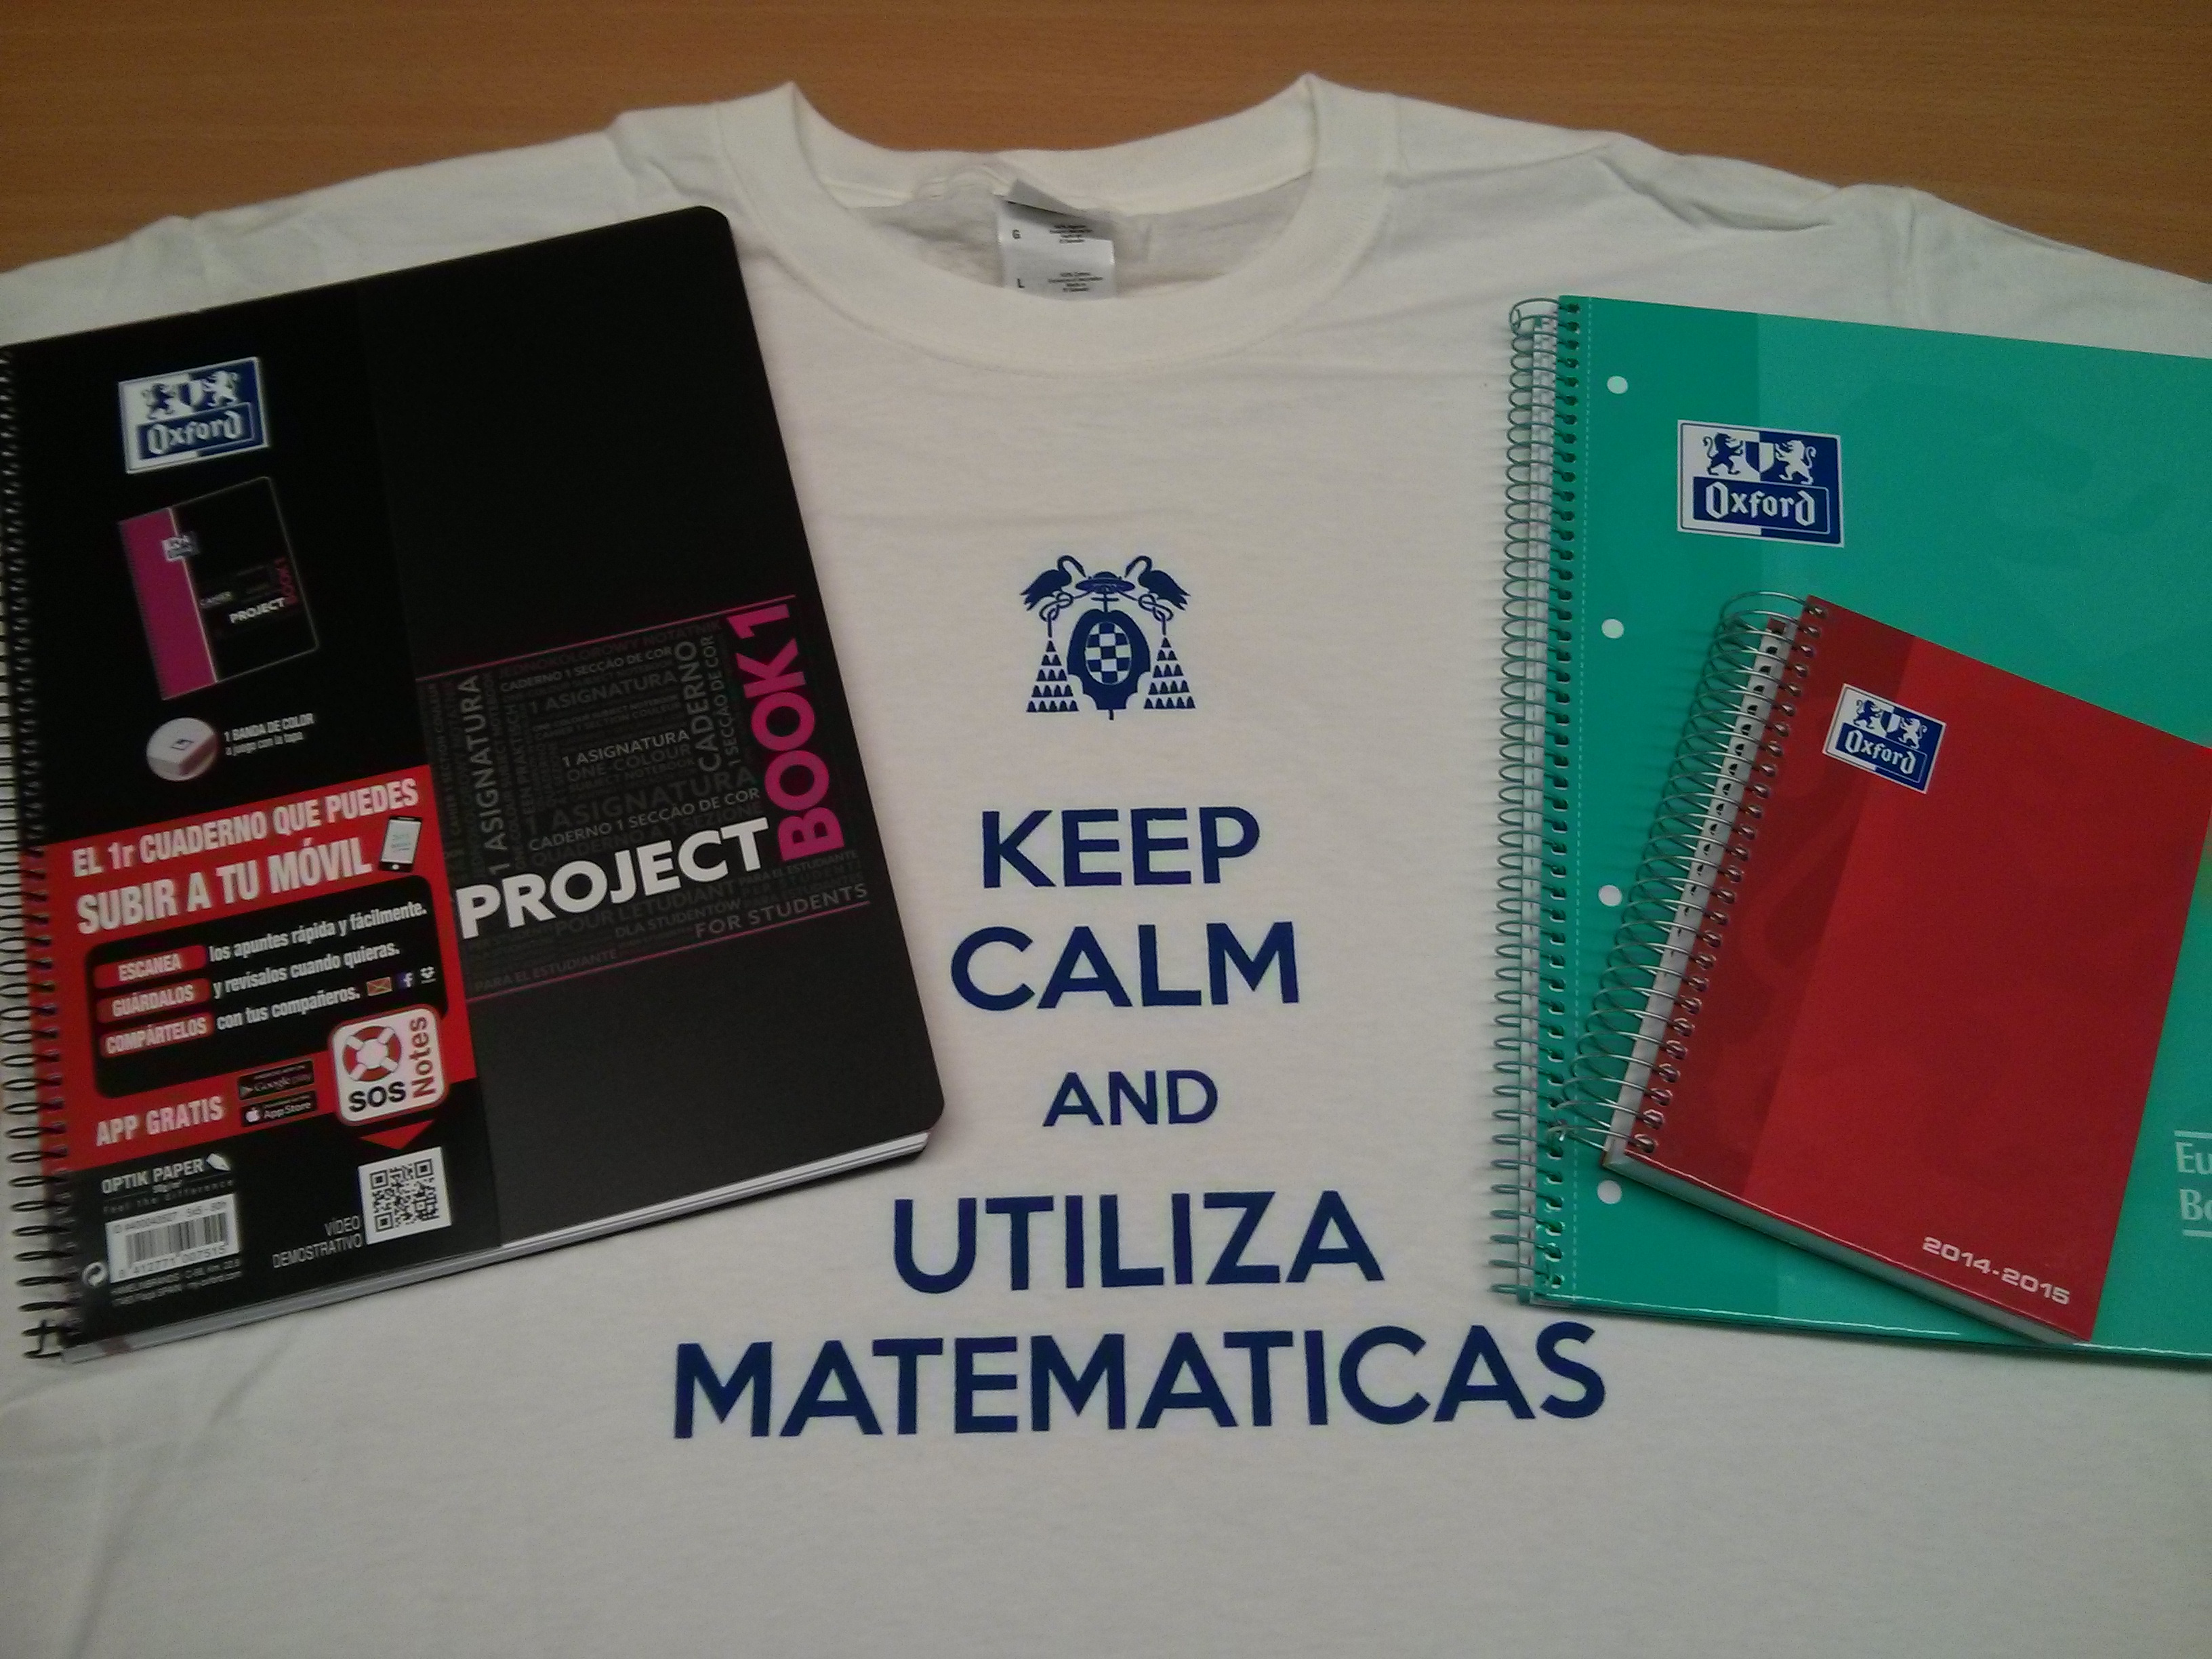 Premios #CarnaMat56: Camiseta "Keep Calma and Utiliza Matemáticas", cuadernos y agenda Oxford